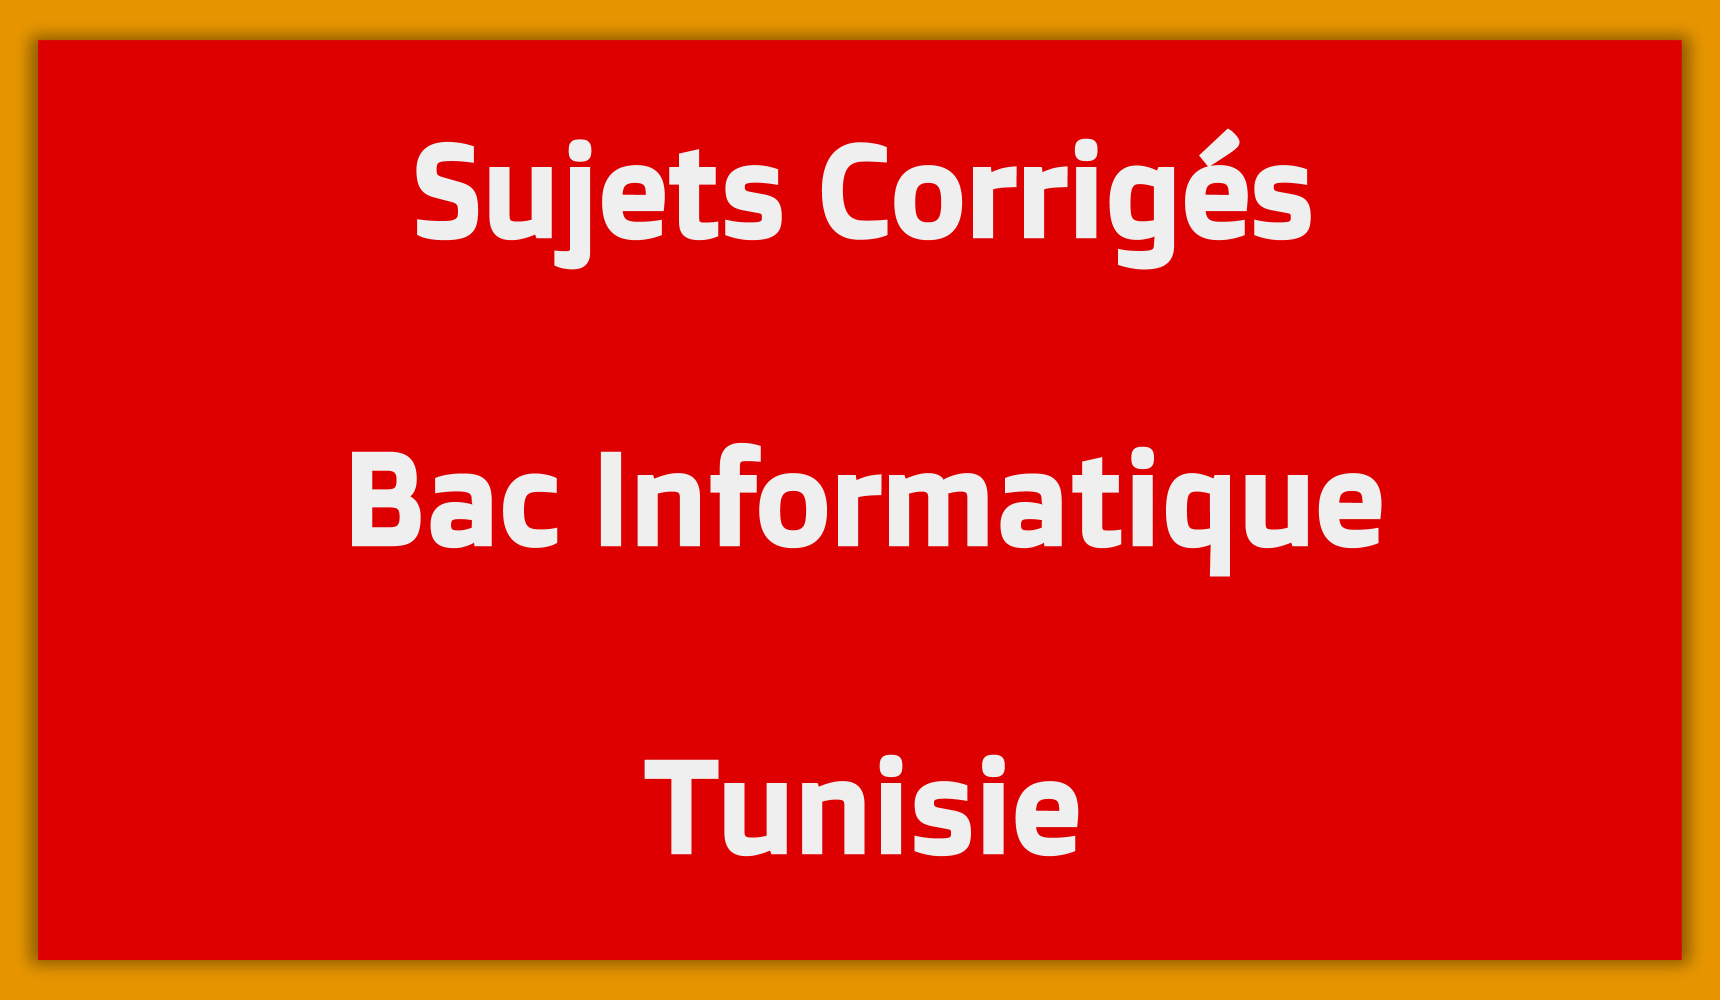 Sujets Corrigés Bac Informatique Tunisie